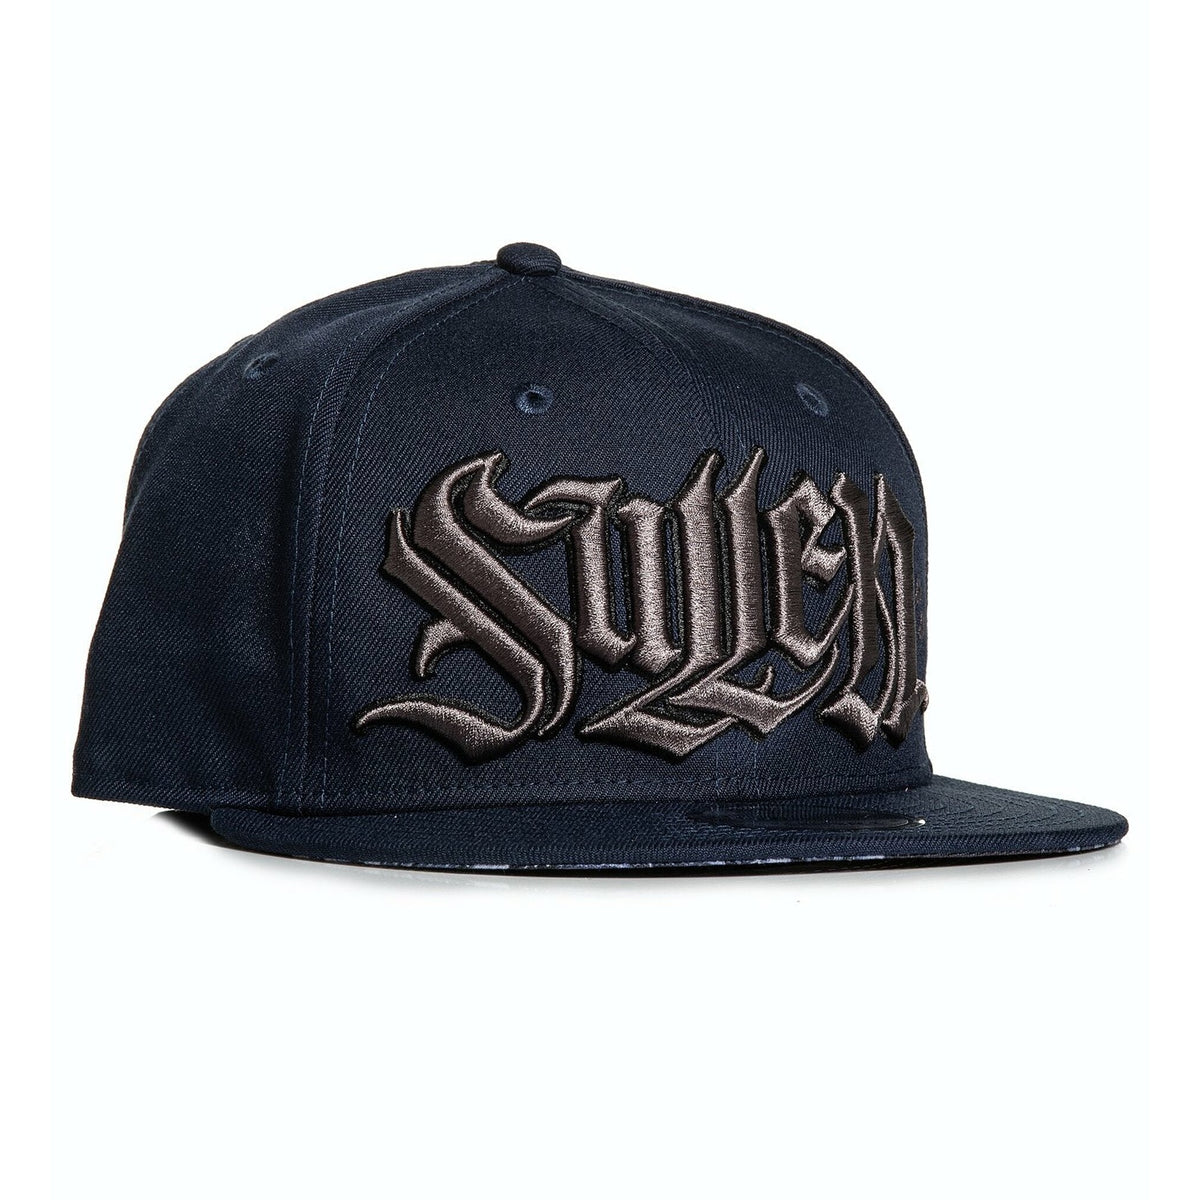 Silvio New Era Snapback Cap-Mens Beanies, Hats &amp; Snapback Caps-Scarlett Dawn